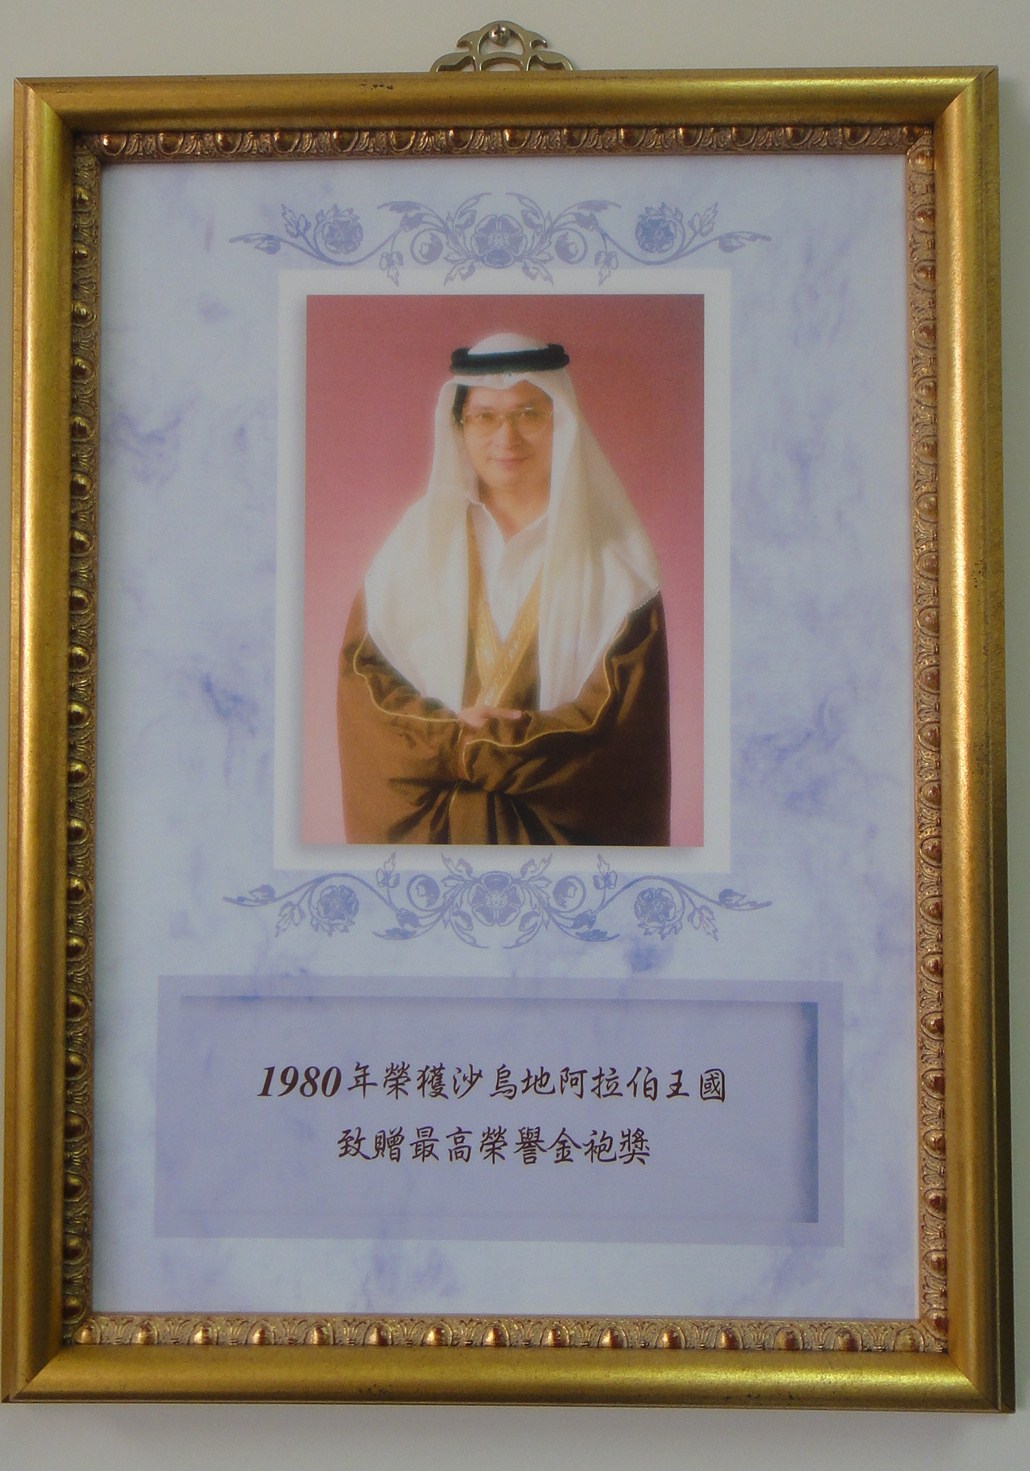 教授擔任沙烏地阿拉伯御醫被贈予榮譽金袍